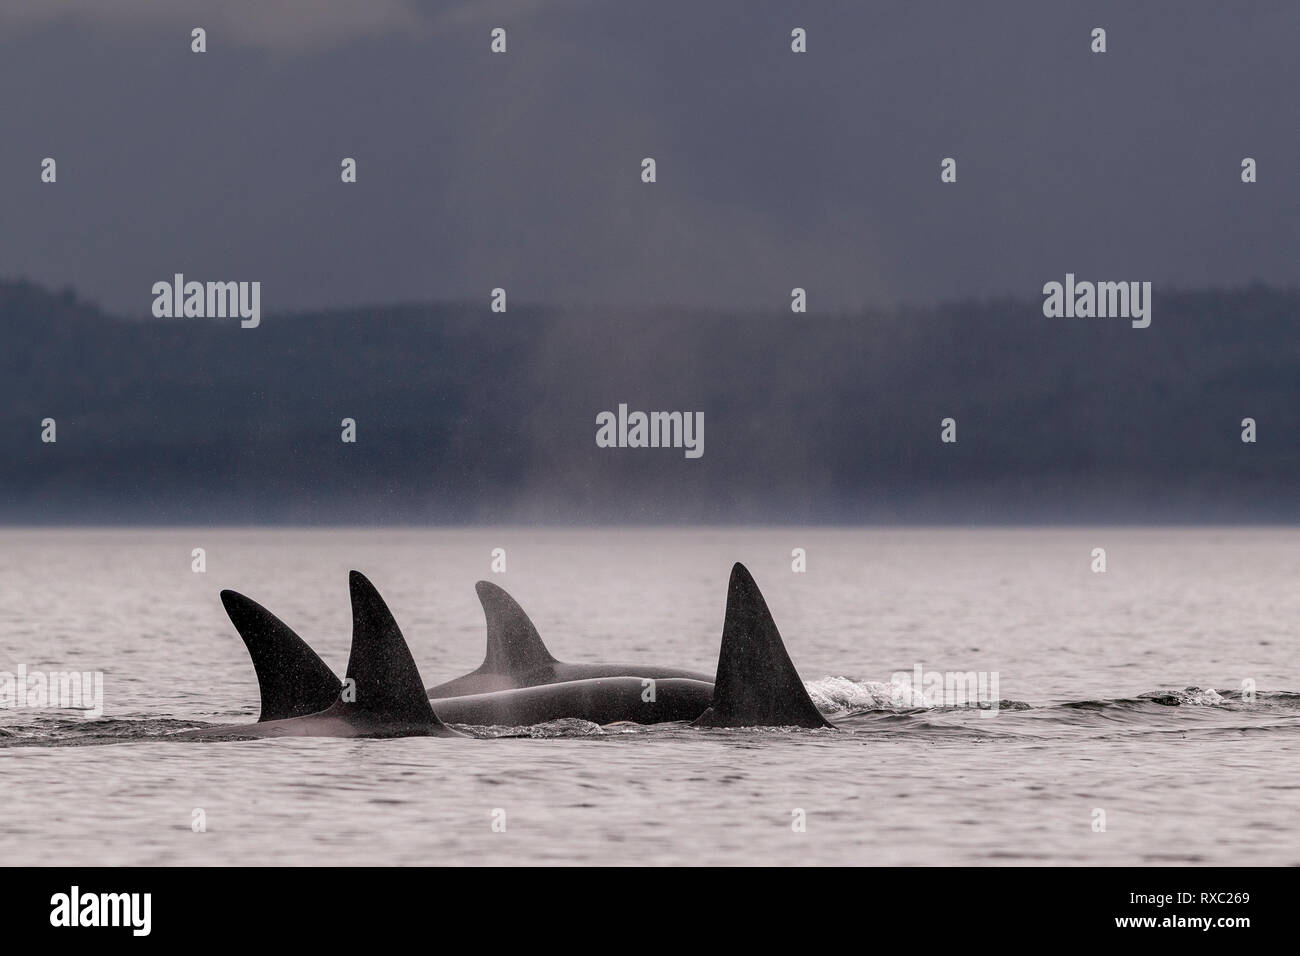 Eine Familie von nördlichen Orcas (Killerwale, orcinus Orca), die entlang der Queen Charlotte Strait mit Malcolm Island, in der Nähe von Lizard Point, First Nations Territory, Vancouver Island, British Columbia, Kanada, fahren. Stockfoto